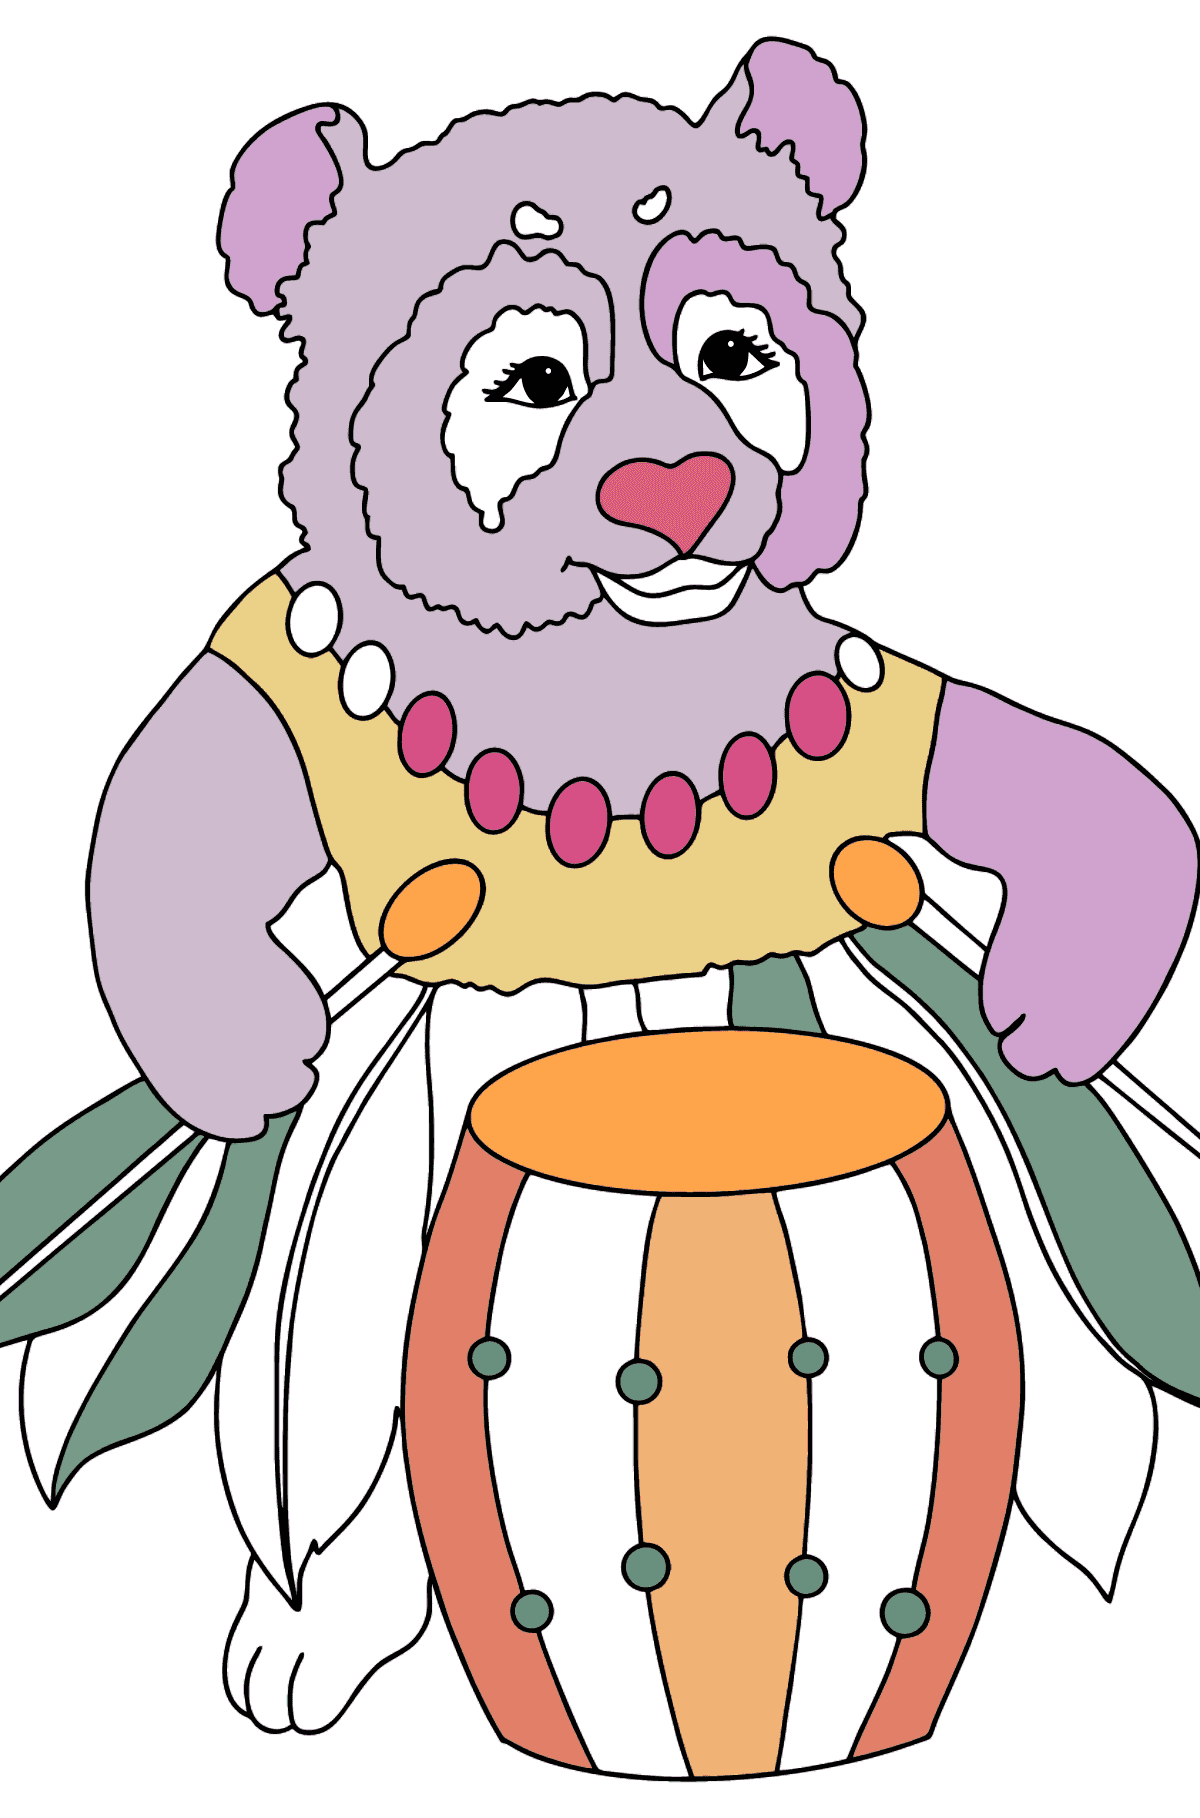 Panda illustrazione da colorare - Disegni da colorare per bambini